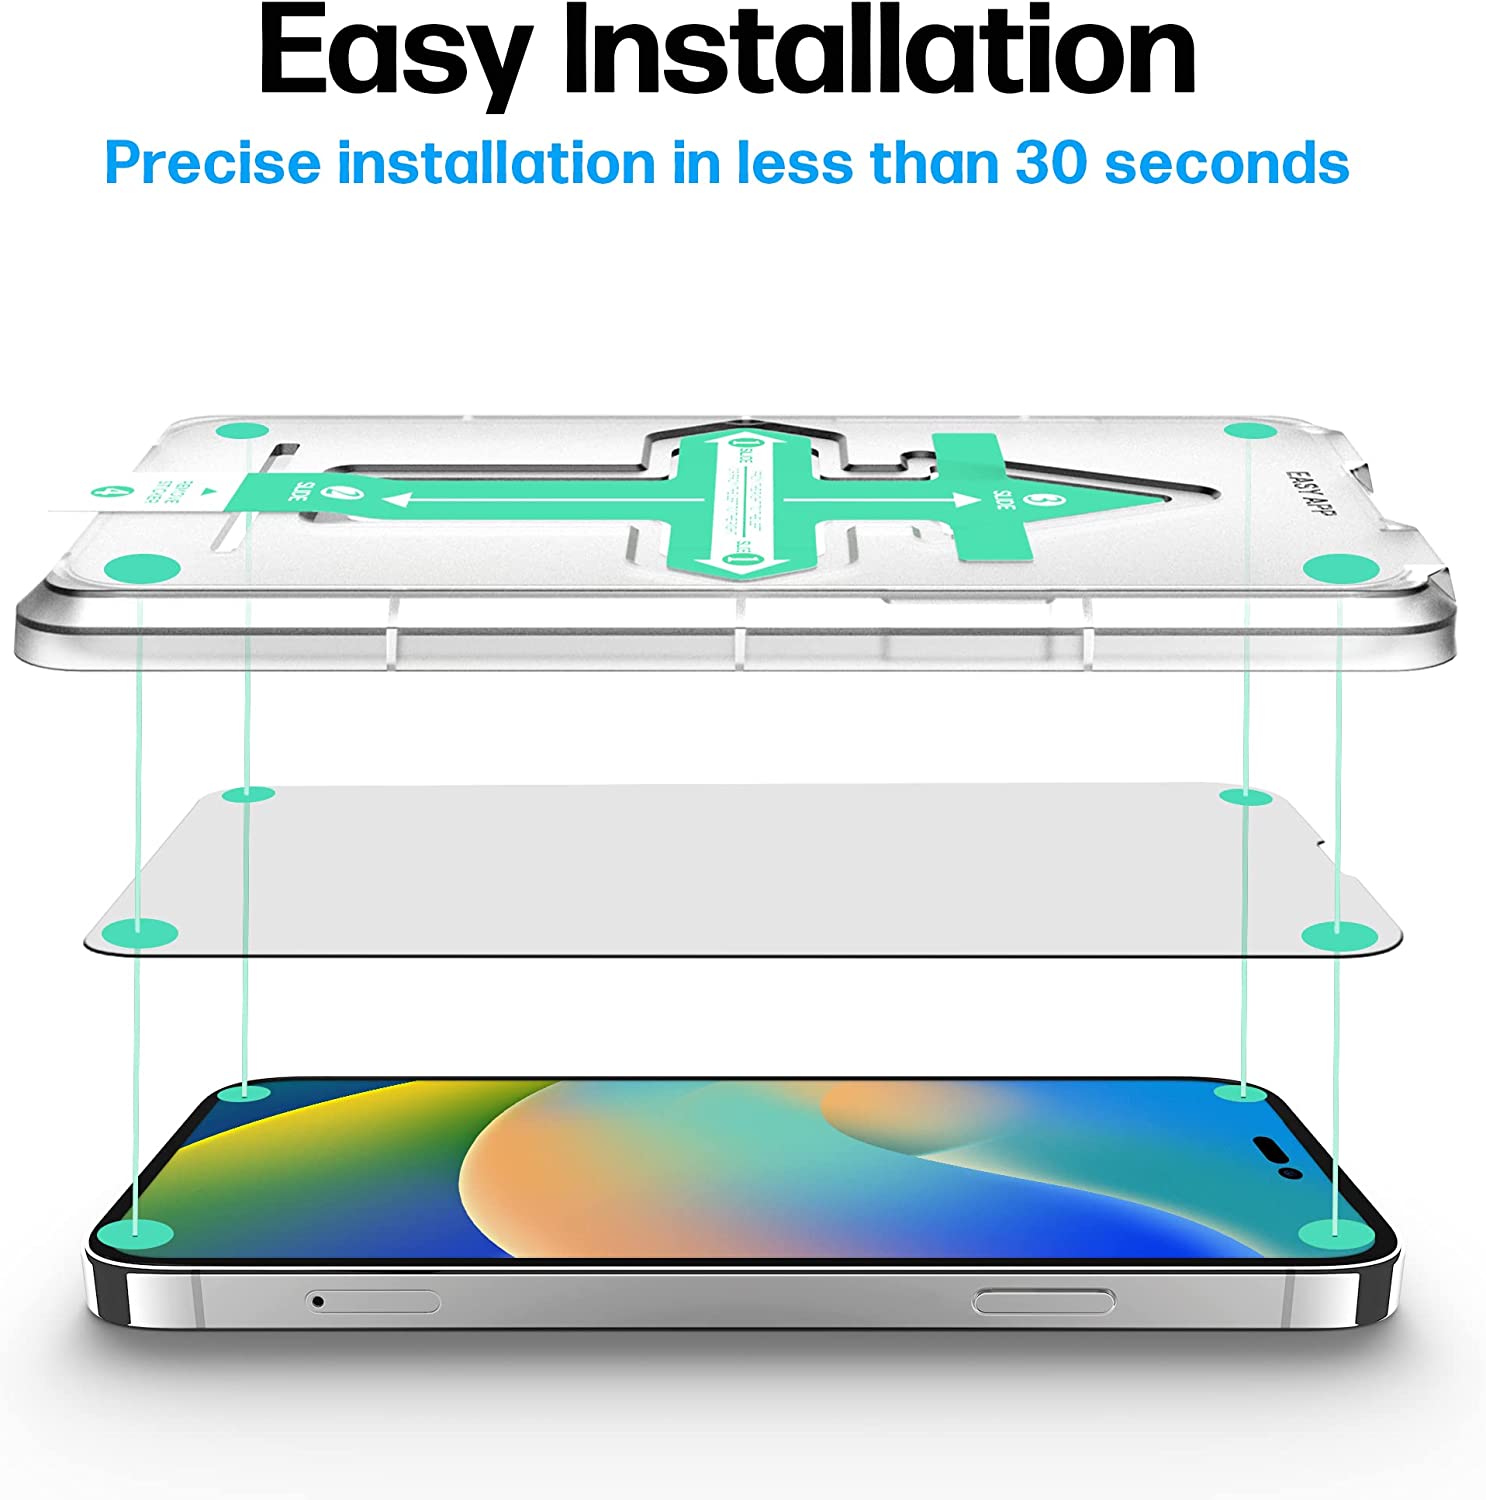 Schutzglas iPhone 14 Pro Max Schutzfolie - Glas Displayschutz mit Schablone, Displayschutzfolie, Glas Folie mit Anbringhilfe [2 Stück]